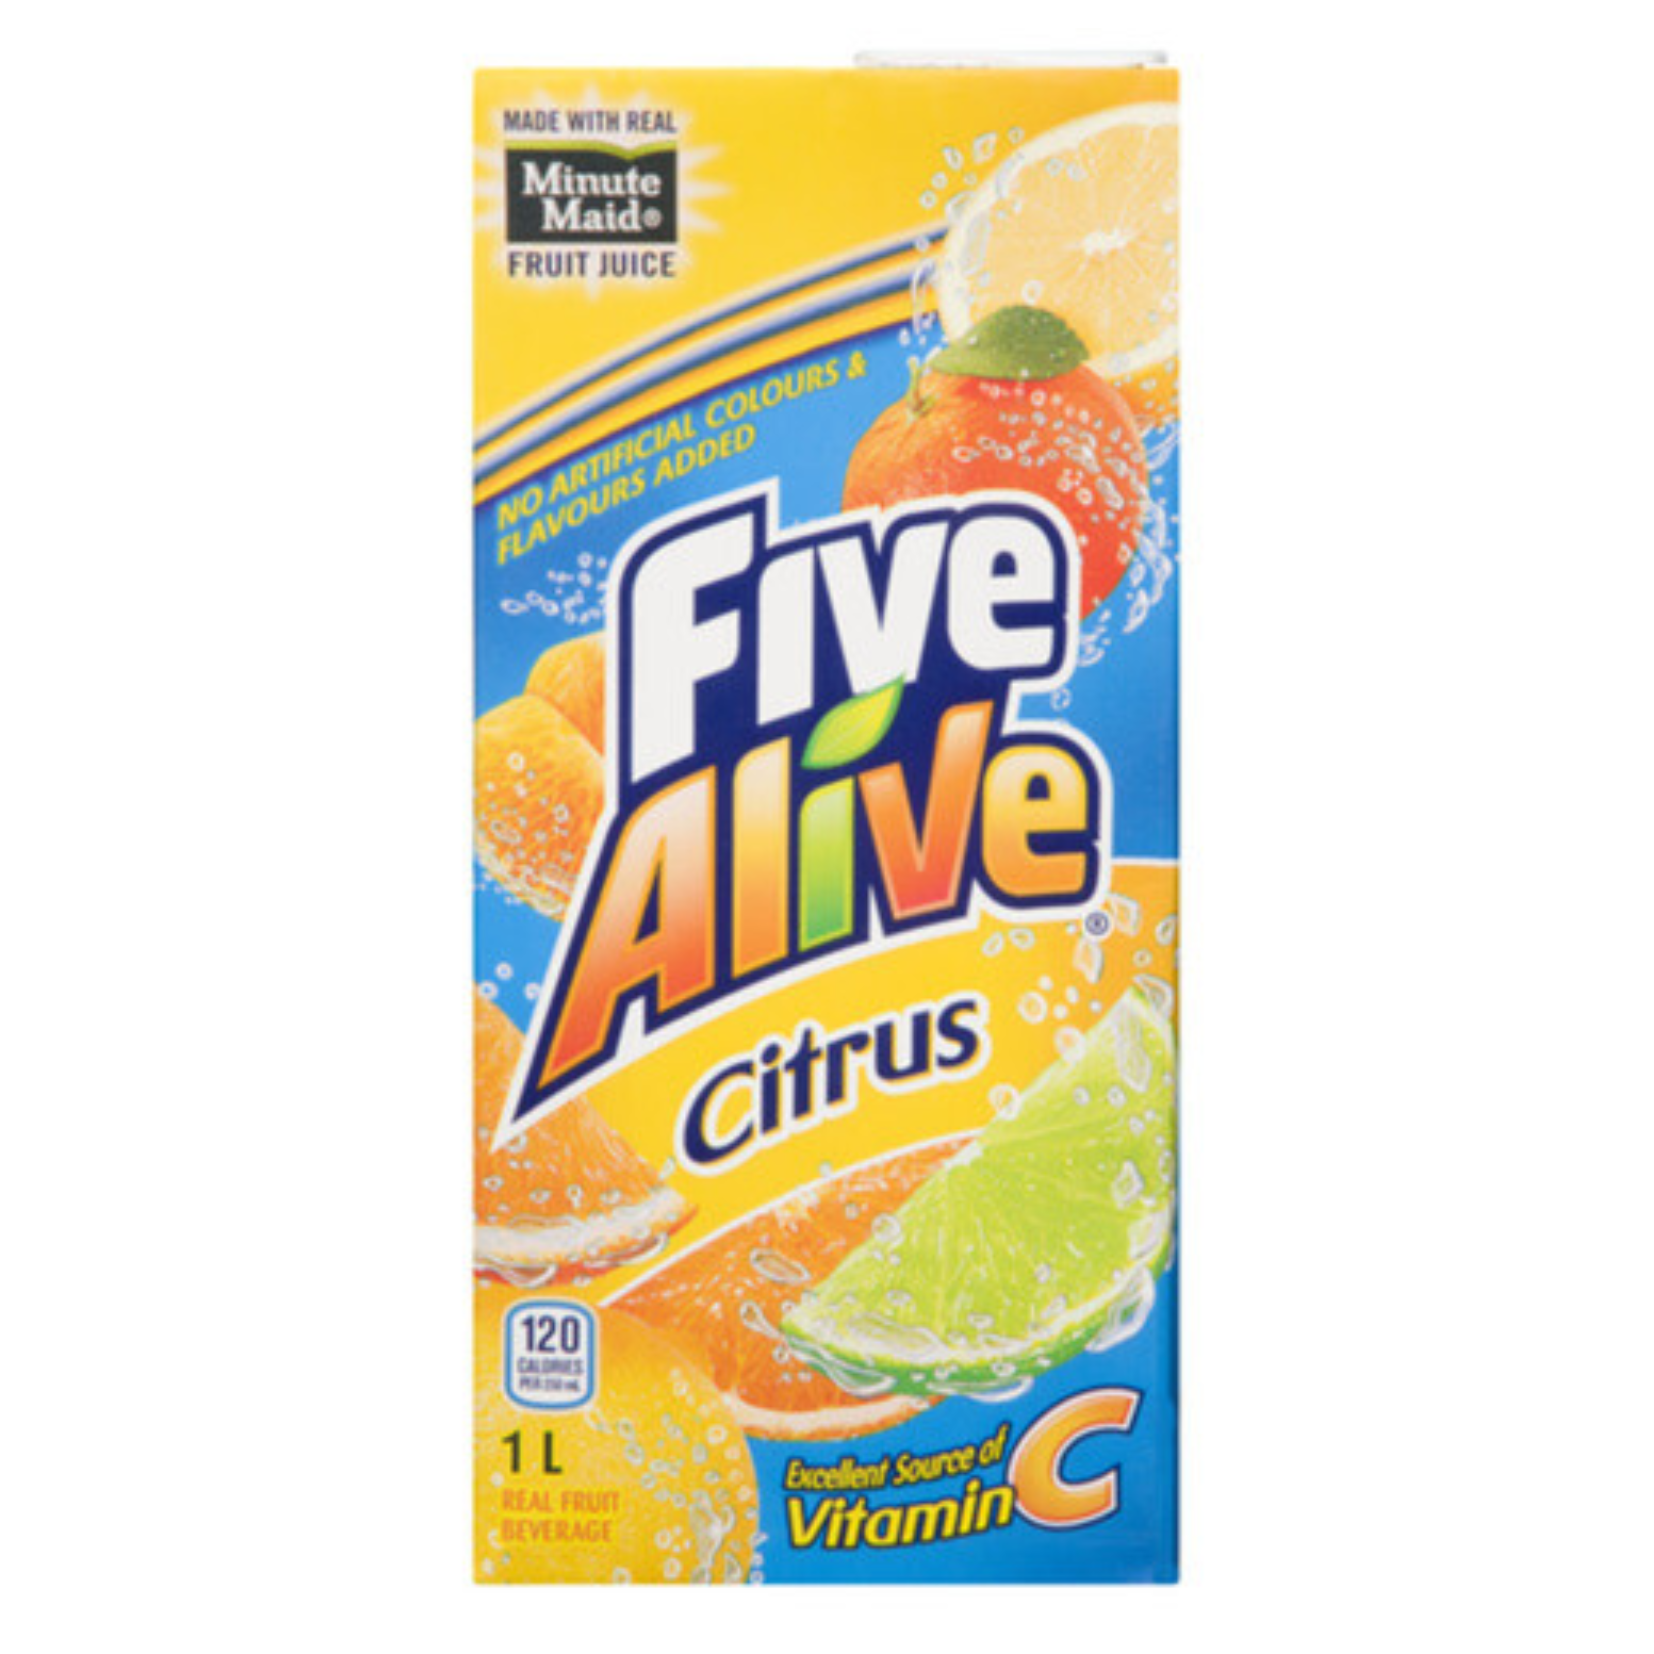 Minute Maid Five Alive Citrus Juice 1L